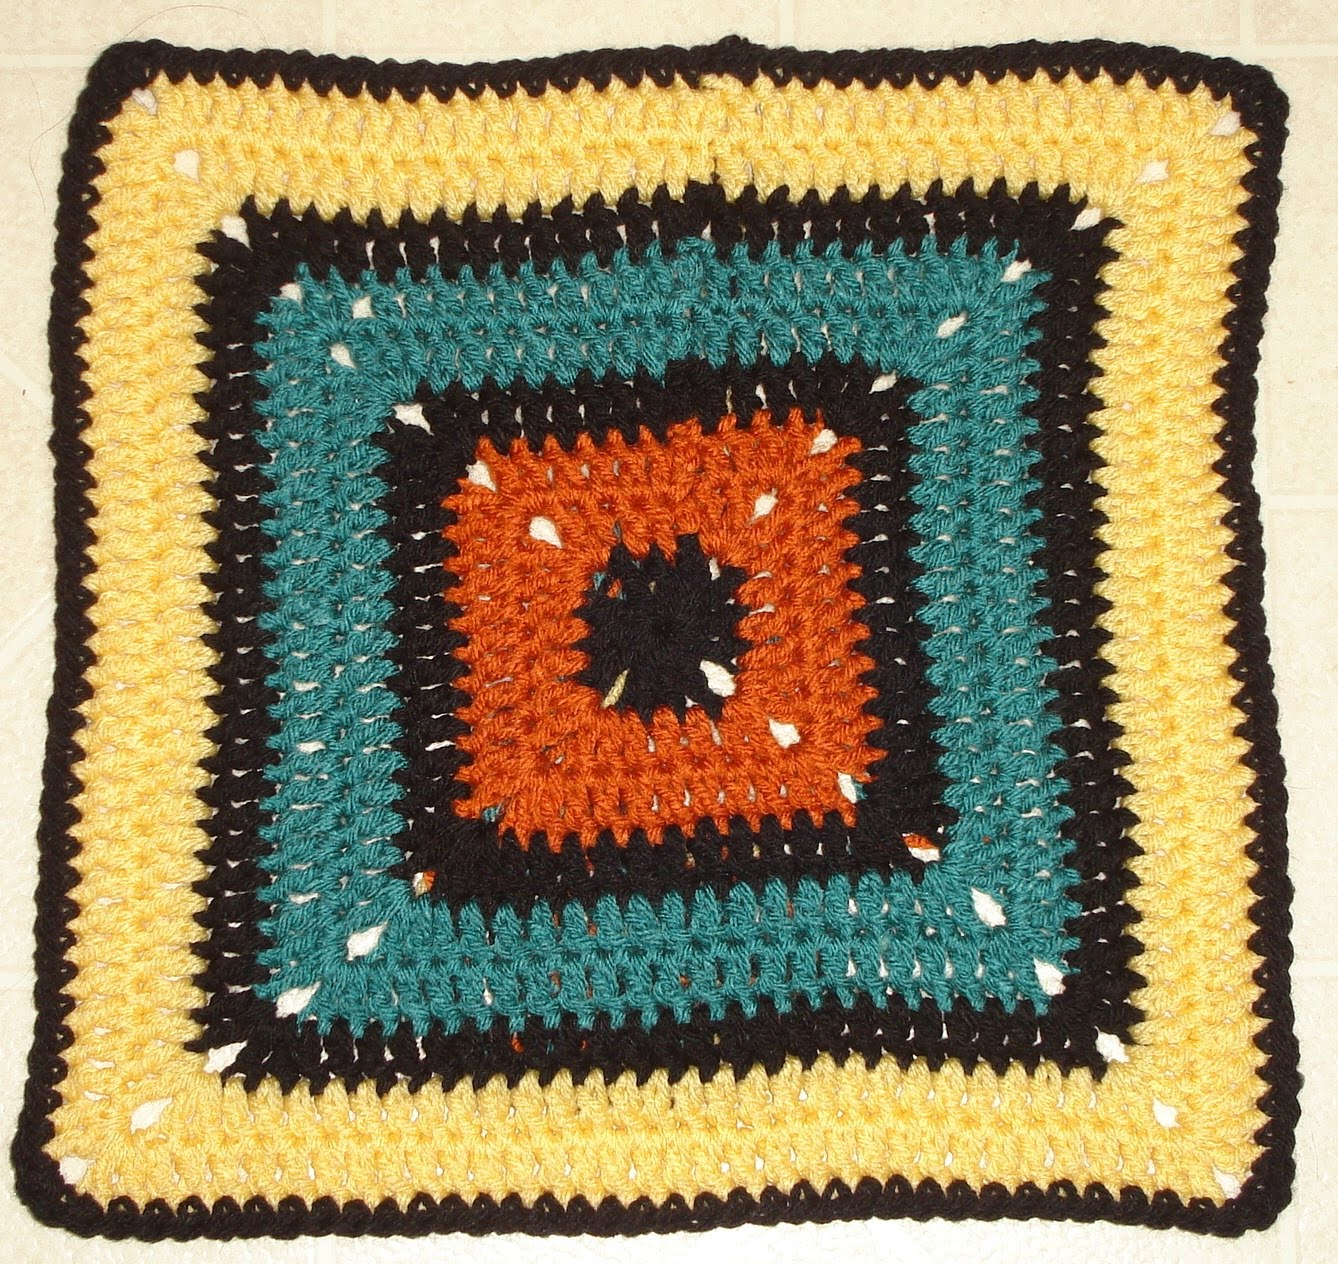 12 Granny Square Crochet Pattern Unholey Granny Square 12 Square